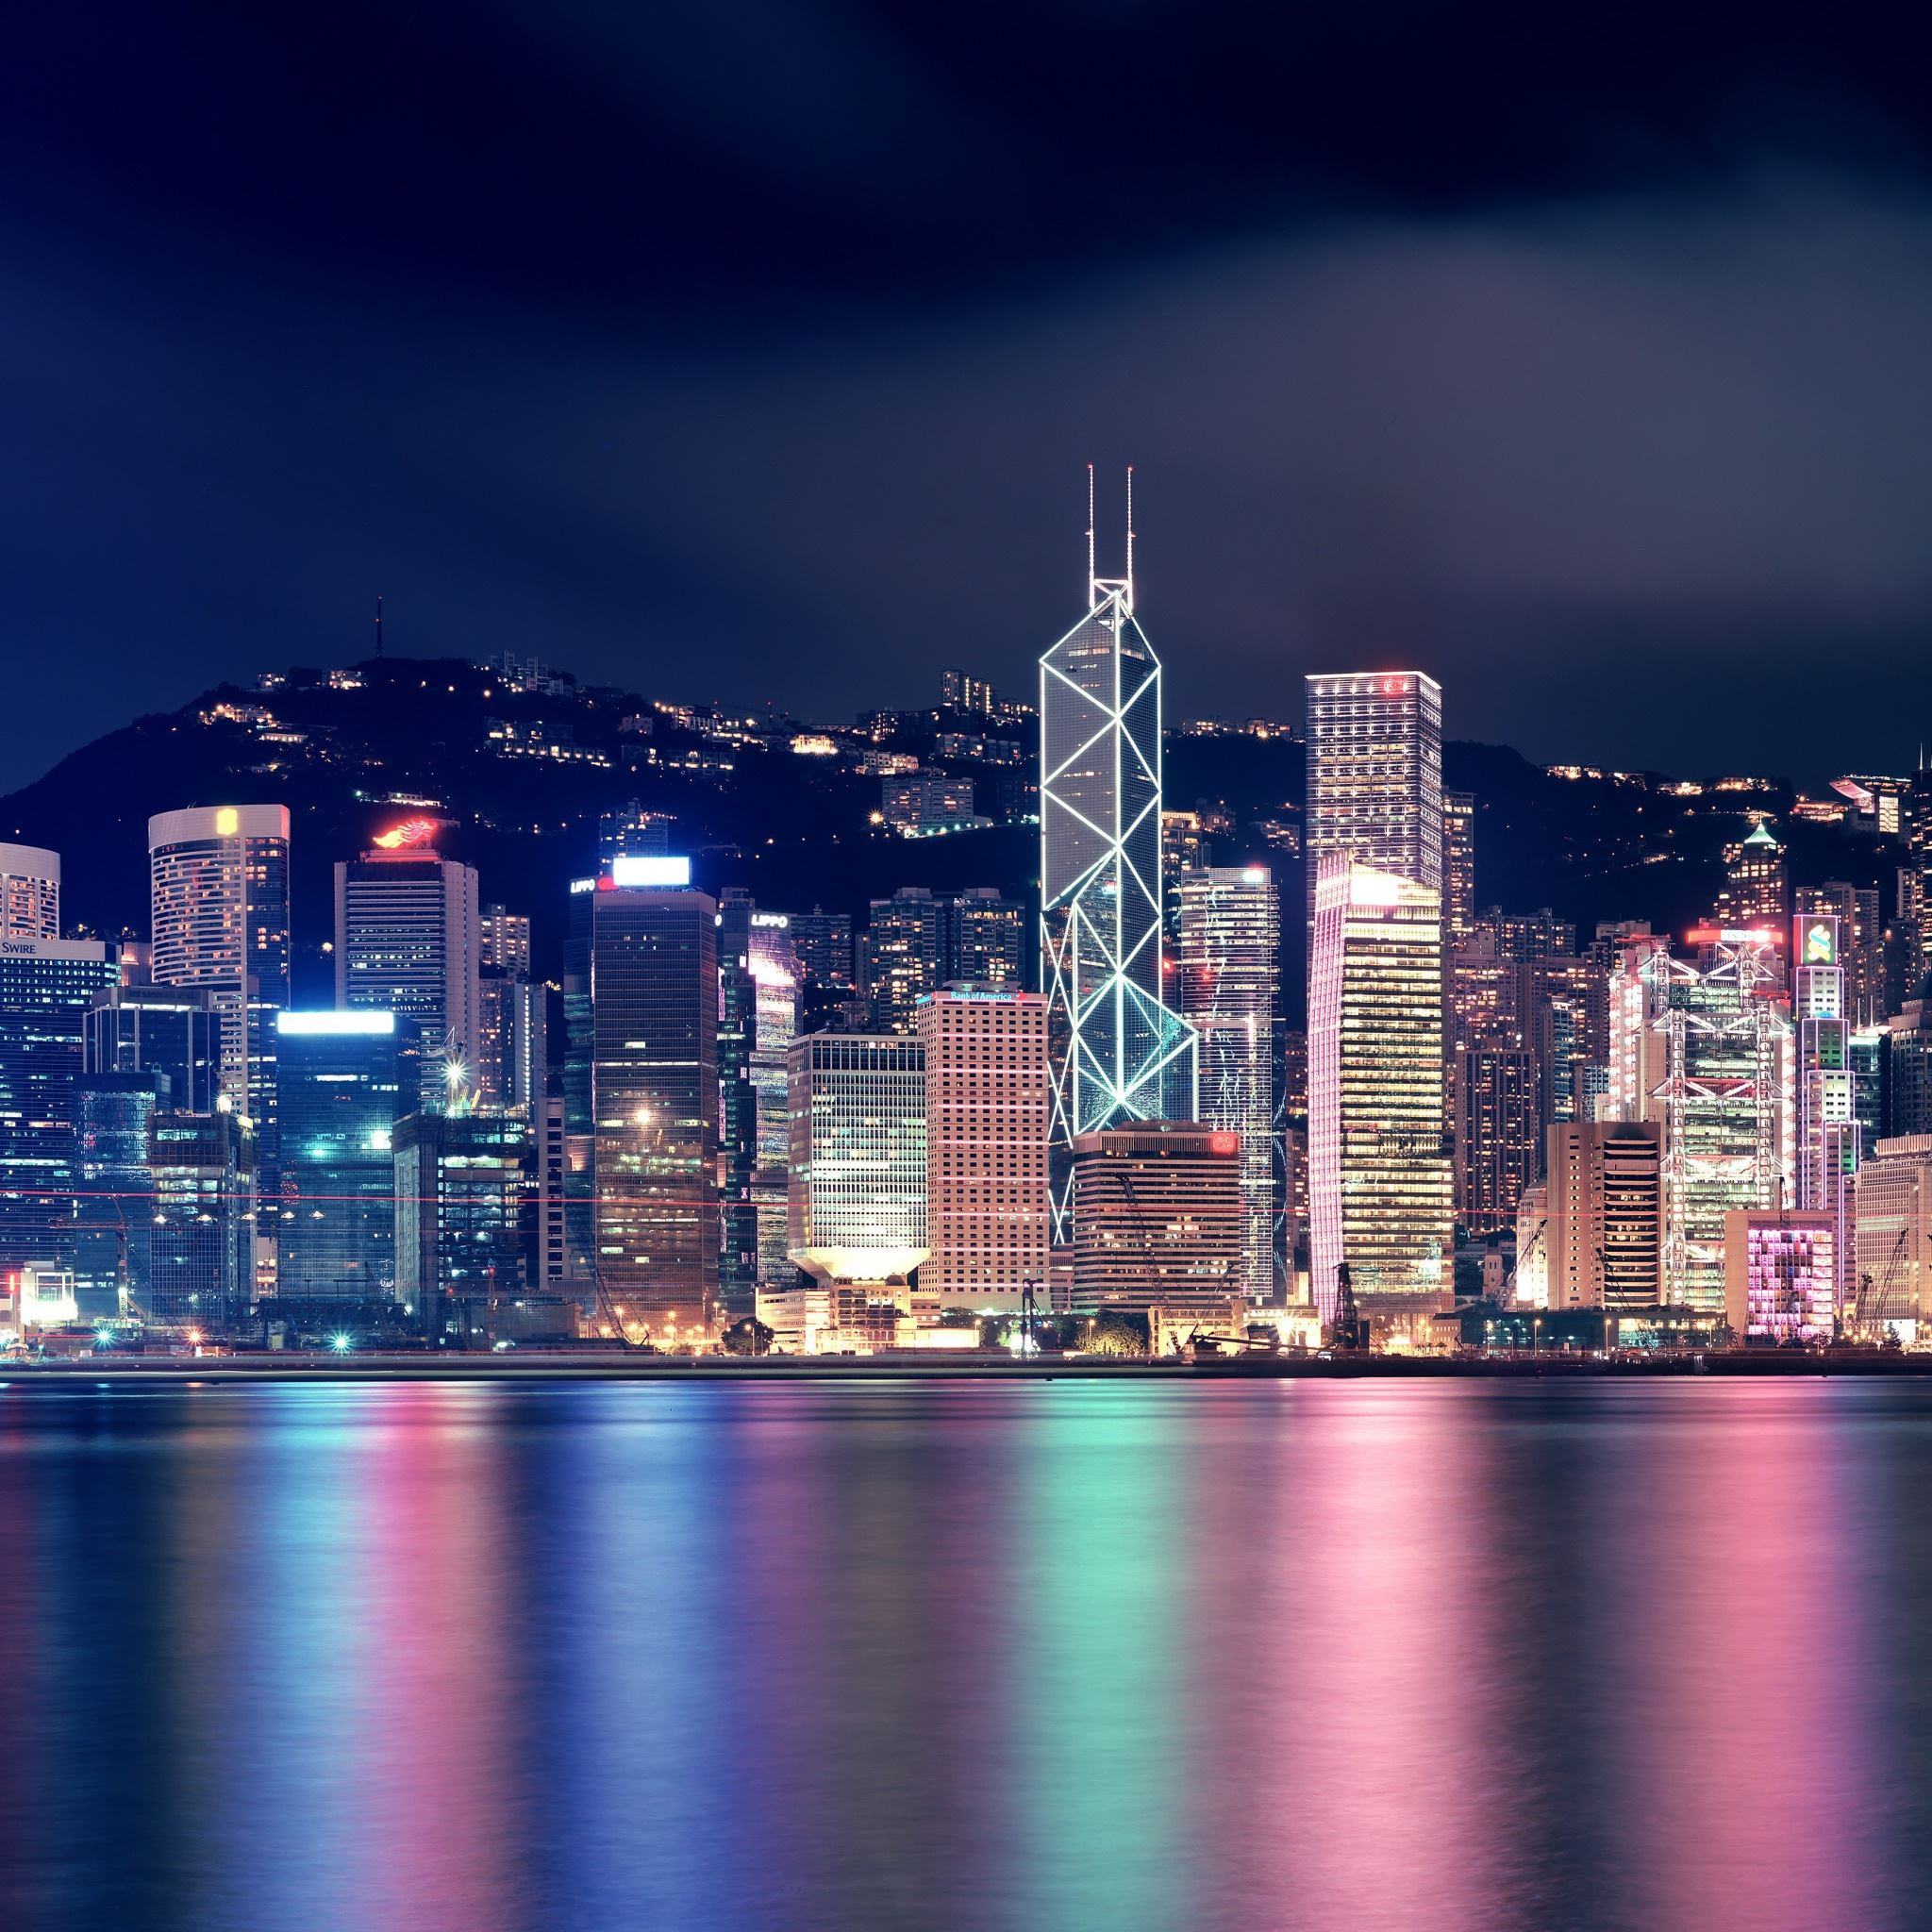 Hong Kong Night Skyscrapers Reflections iPad Air wallpaper 